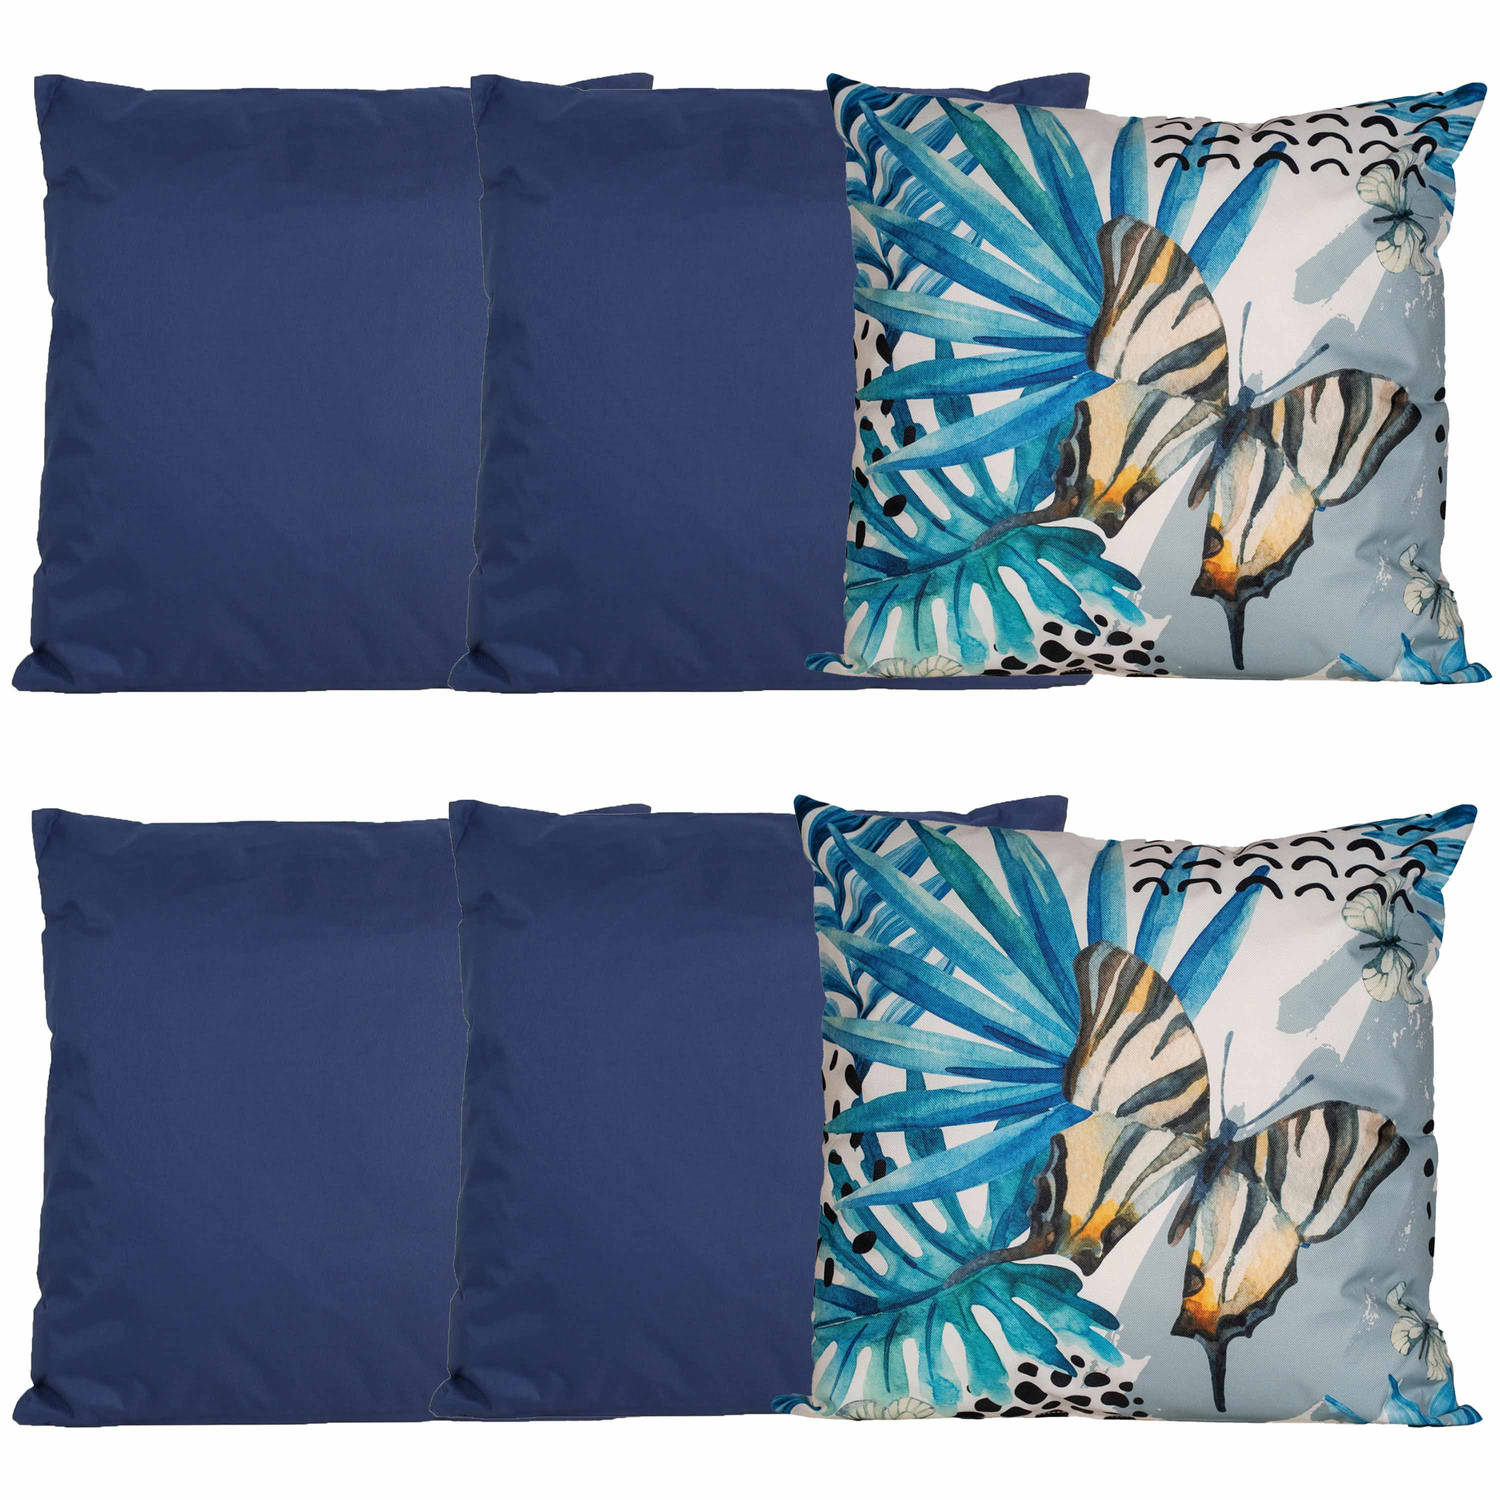 Bank-tuin kussens set voor binnen-buiten 6x stuks donkerblauw-tropical print 45 x 45 cm Sierkussens